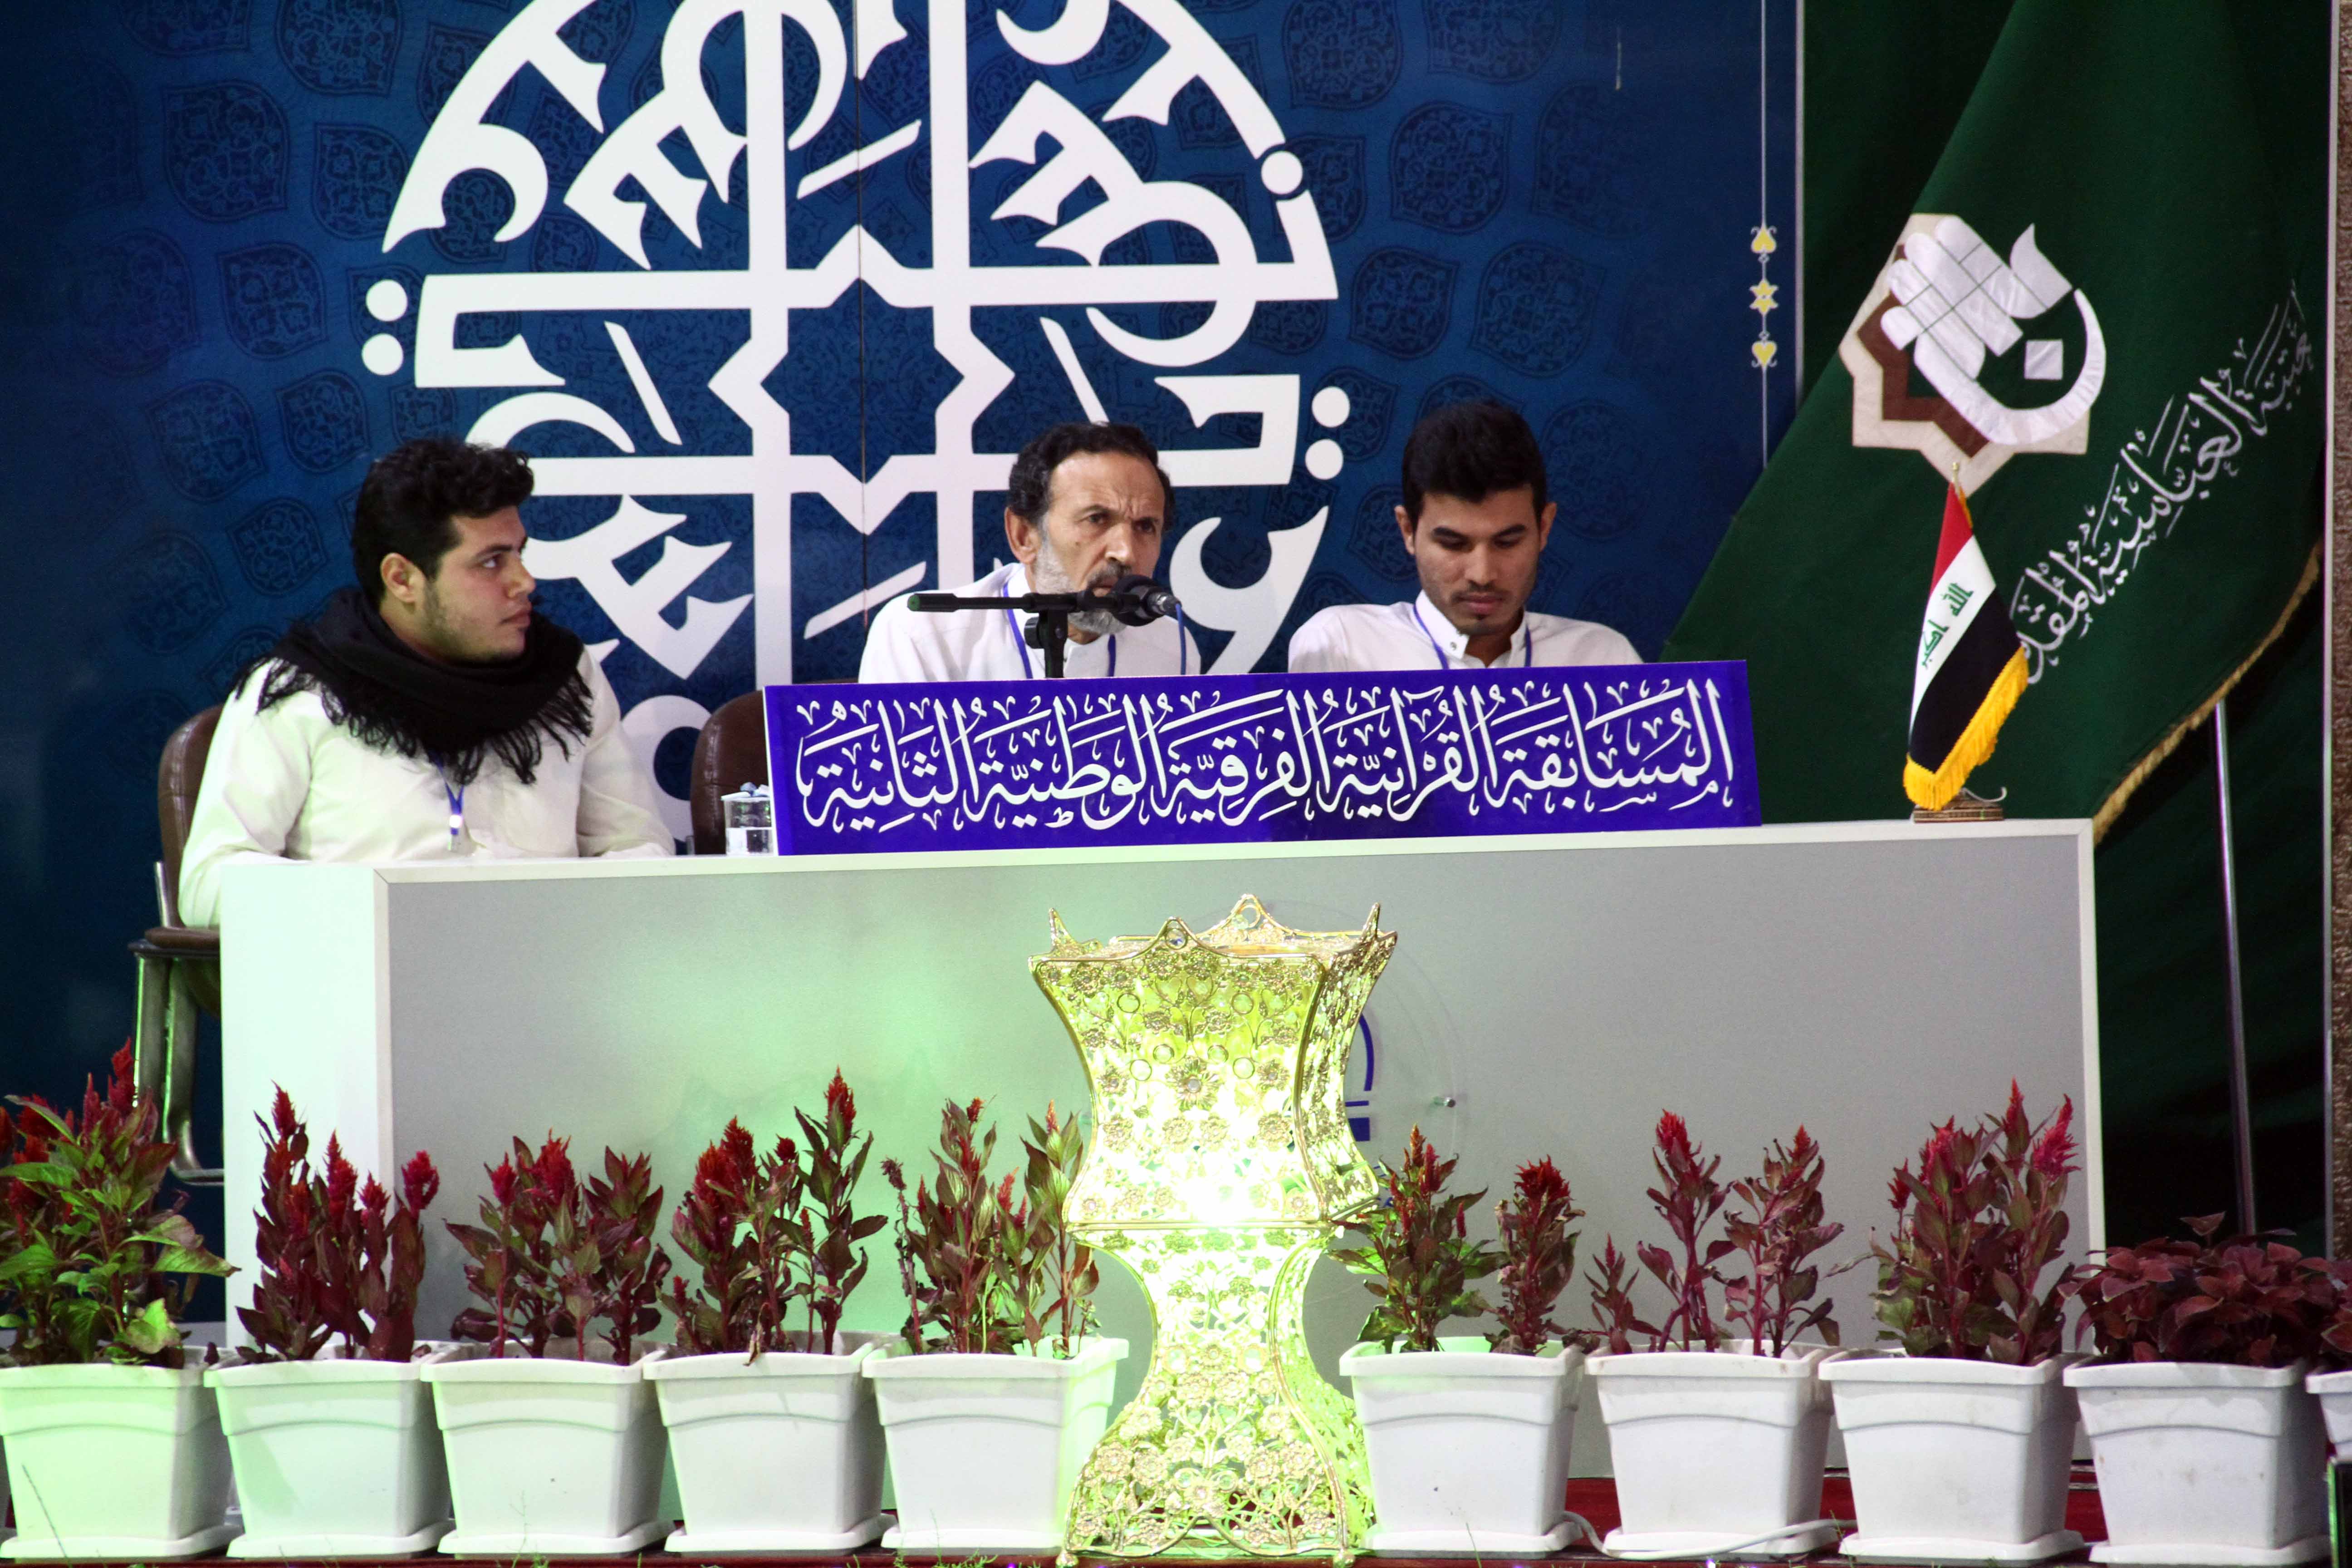 نتائج المرحلة الأولى من المسابقة القرآنية الفرقية الوطنية الثانية تكشف عن تنافس كبير بين الفرق المتسابقة.